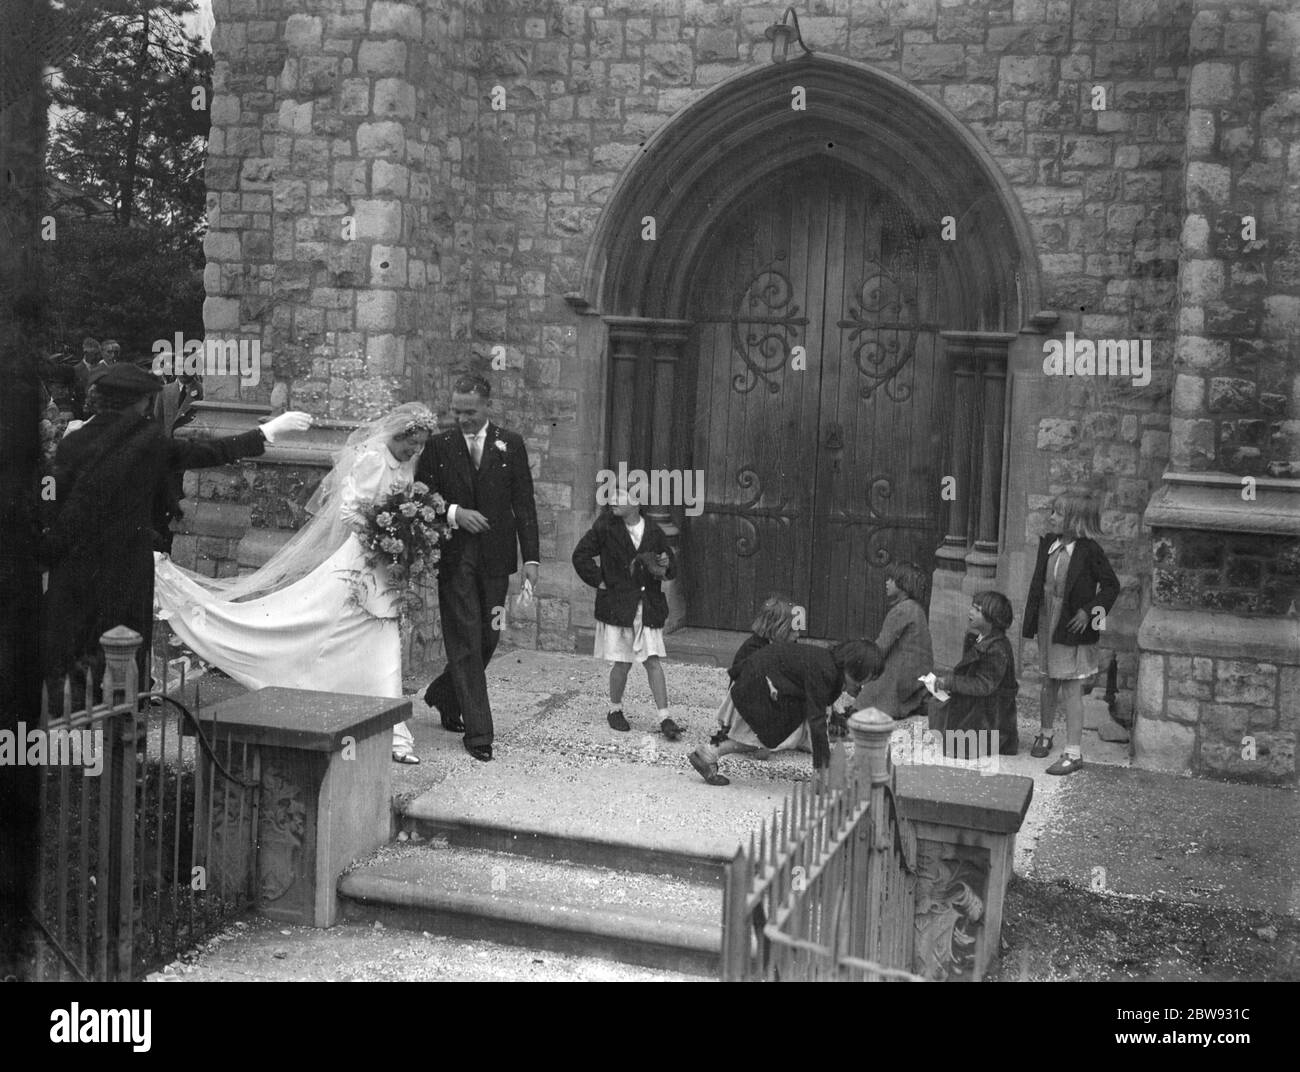 Die Hochzeit von Albert Victor Phipps und Miss Ivy Florence Morgan in Eltham, Kent. Braut und Bräutigam gehen durch das Konfetti, das die Kinder von den Stufen abholen. 1939 Stockfoto